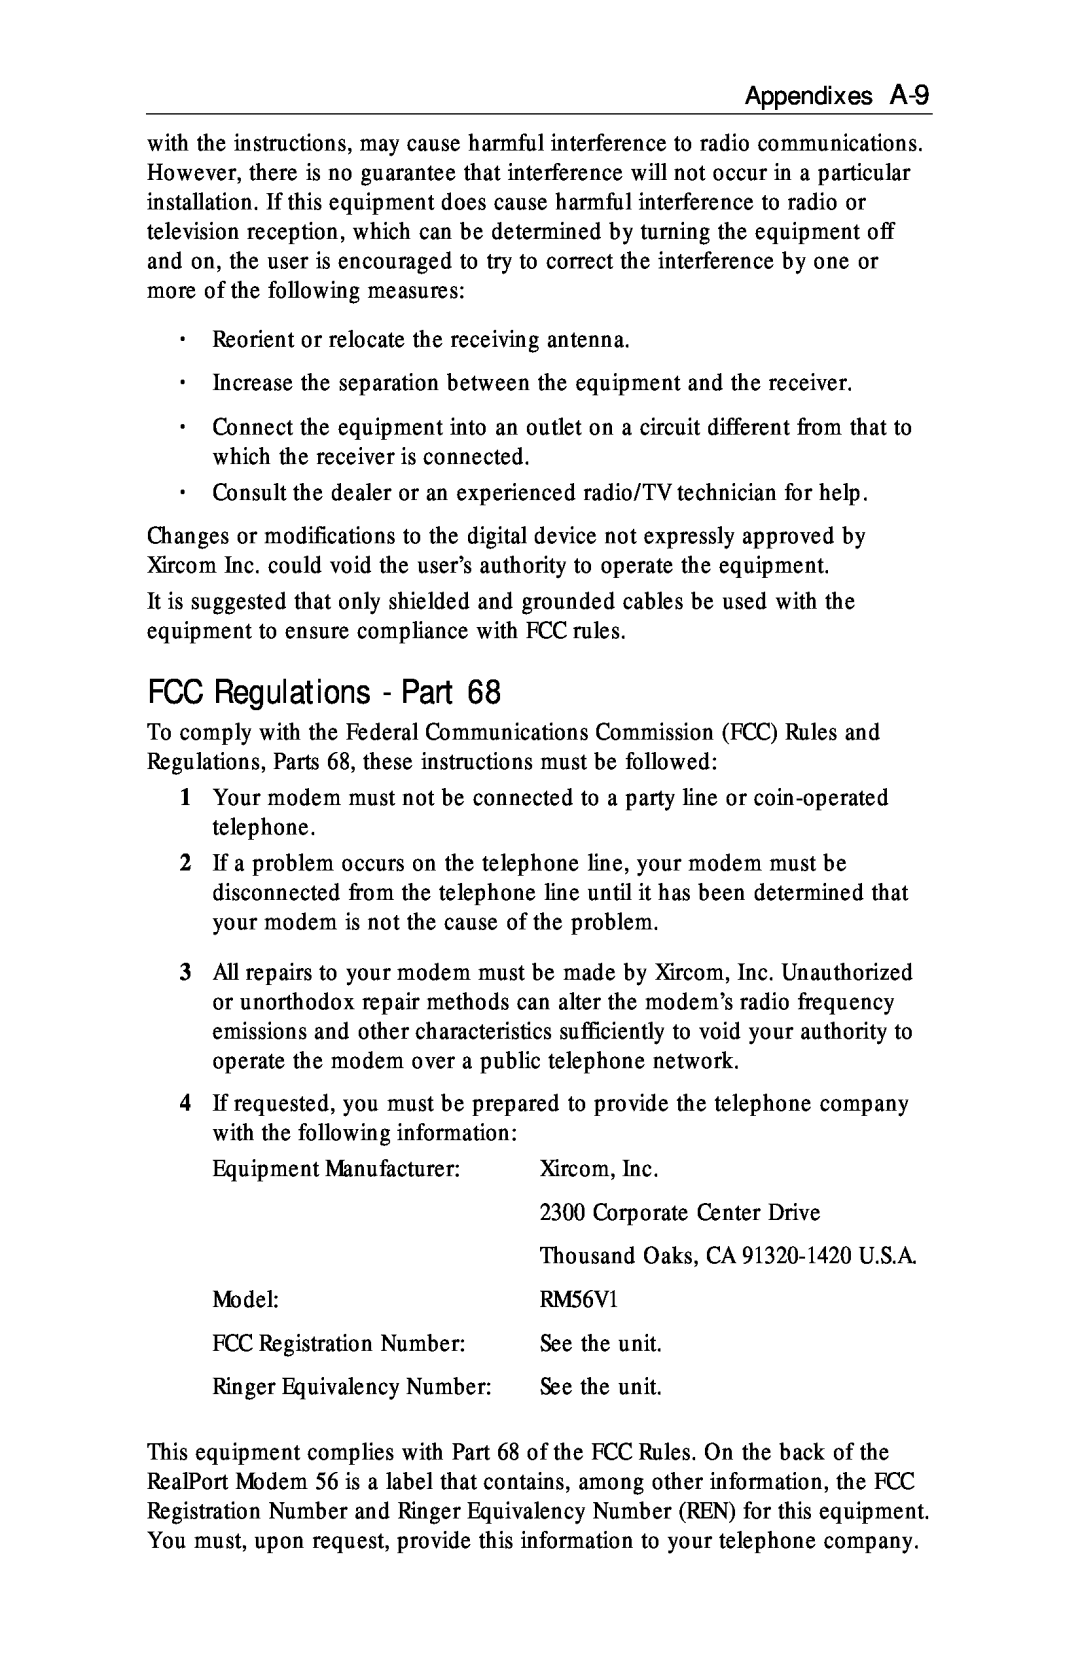 Xircom RM56V1 manual FCC Regulations - Part, Appendixes A-9 